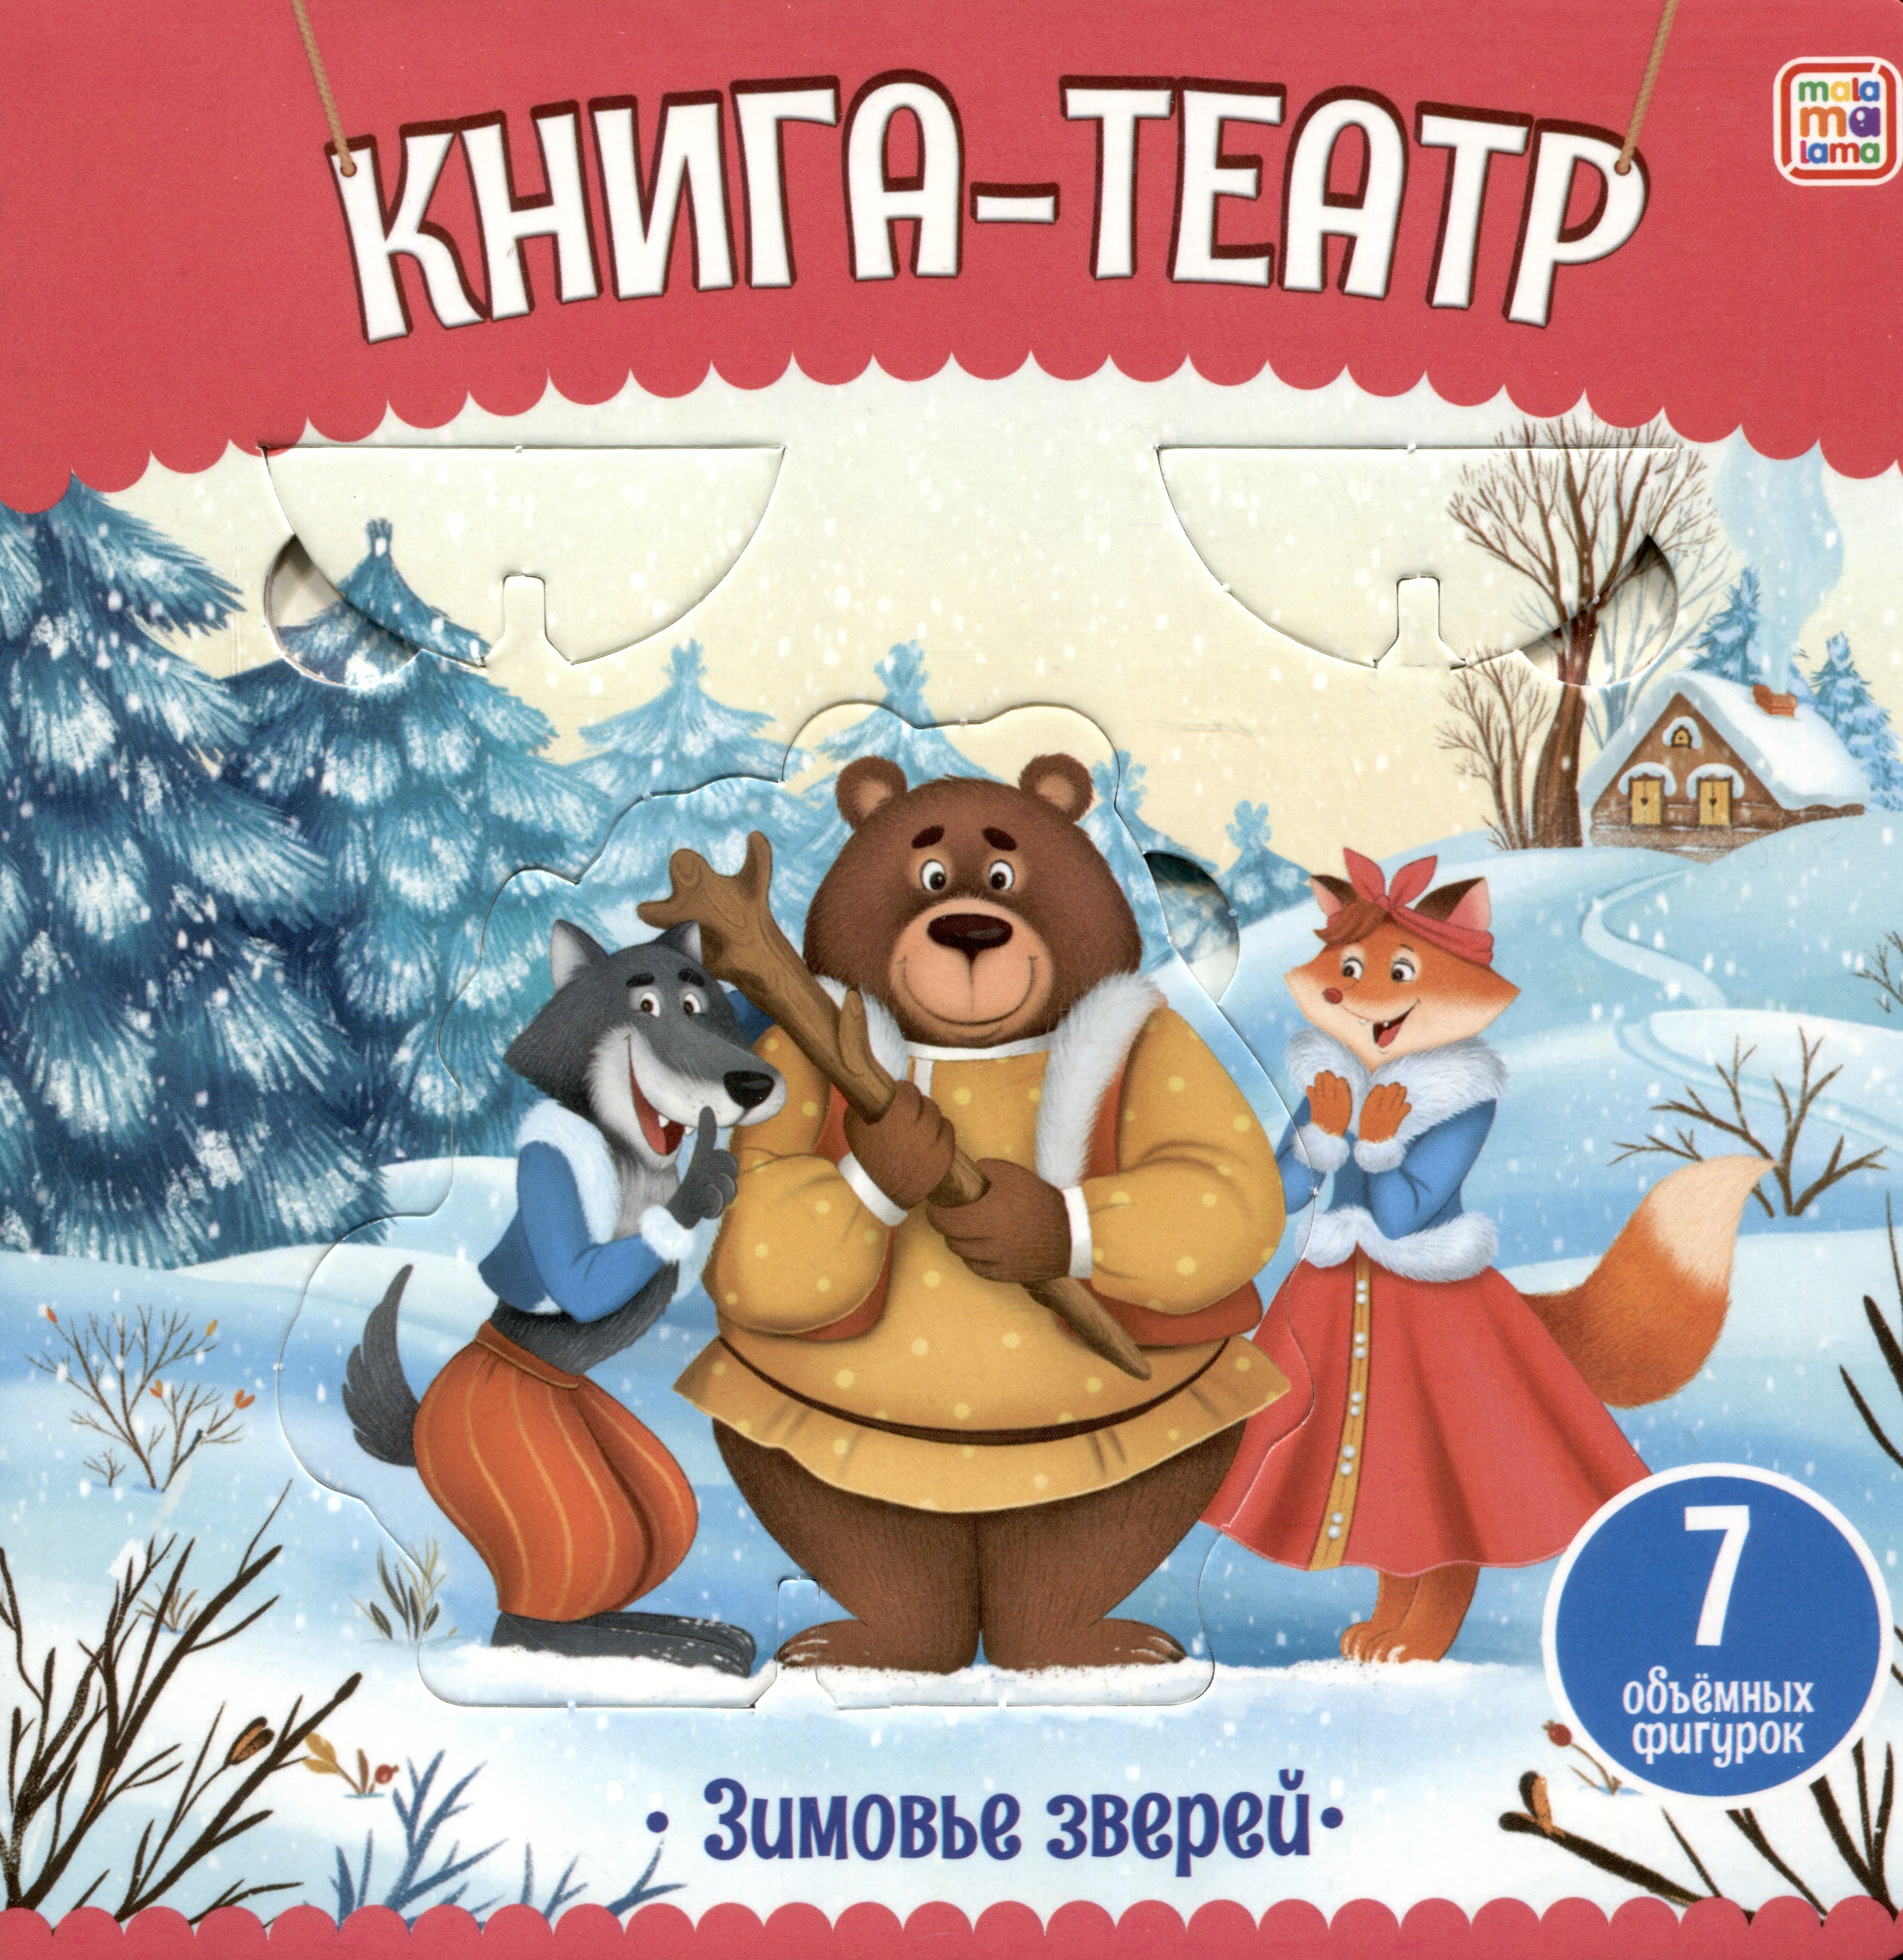 Зимовье зверей: книга-театр malamalama malamalama сборник сказок для детей любимые сказки